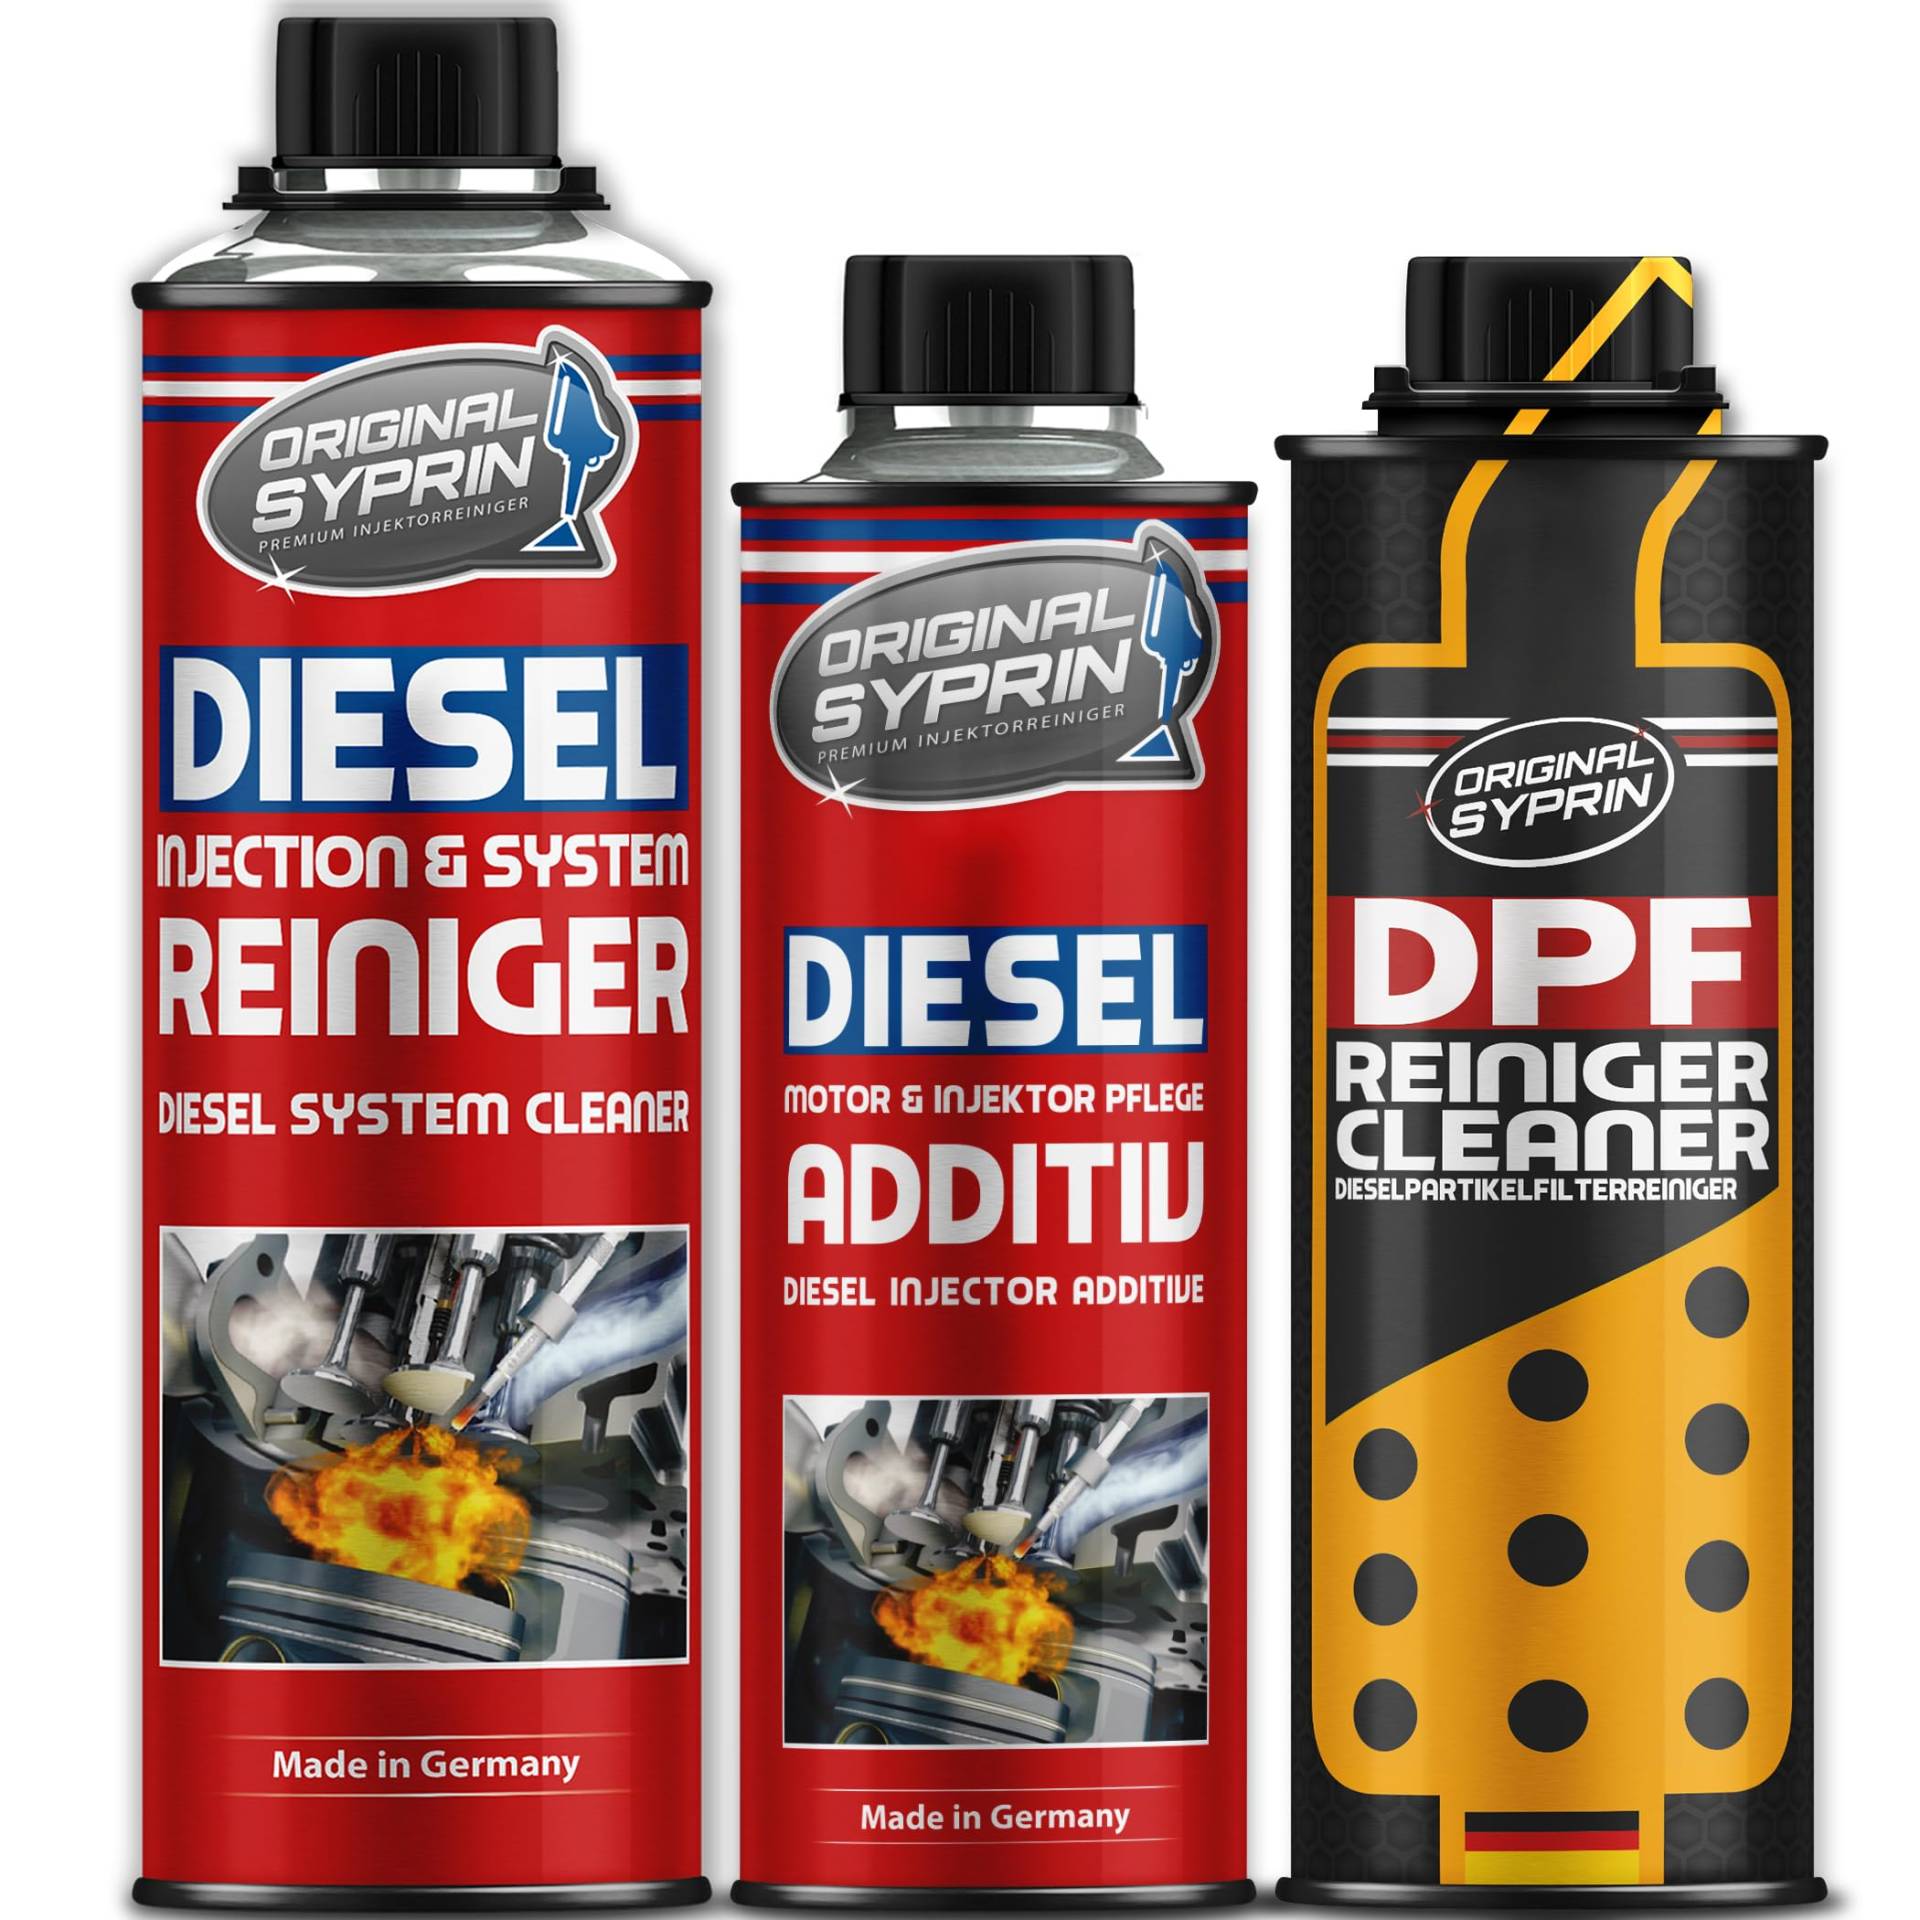 Original Syprin DPF Dieselpartikelfilter Reiniger Diesel Reiniger I Additiv zur DPF Reinigung I Diesel DPF Cleaner & DPF Schutz Komplett-Set von SYPRIN